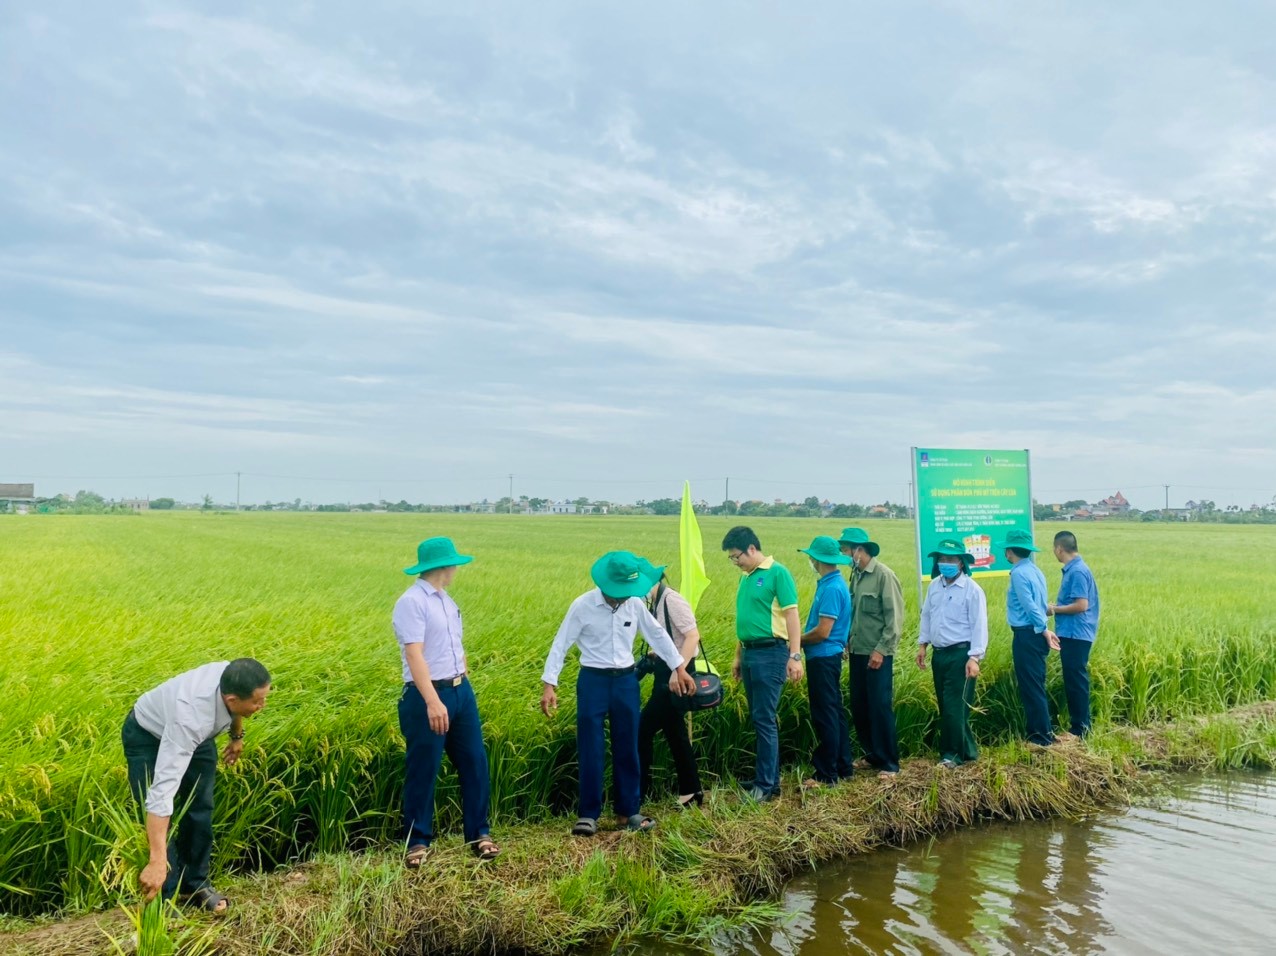 PVFCCo North tổ chức thành công “Hội thảo tổng kết mô hình trình diễn sử dụng phân bón Phú Mỹ trên cây lúa” tại Nam Định.